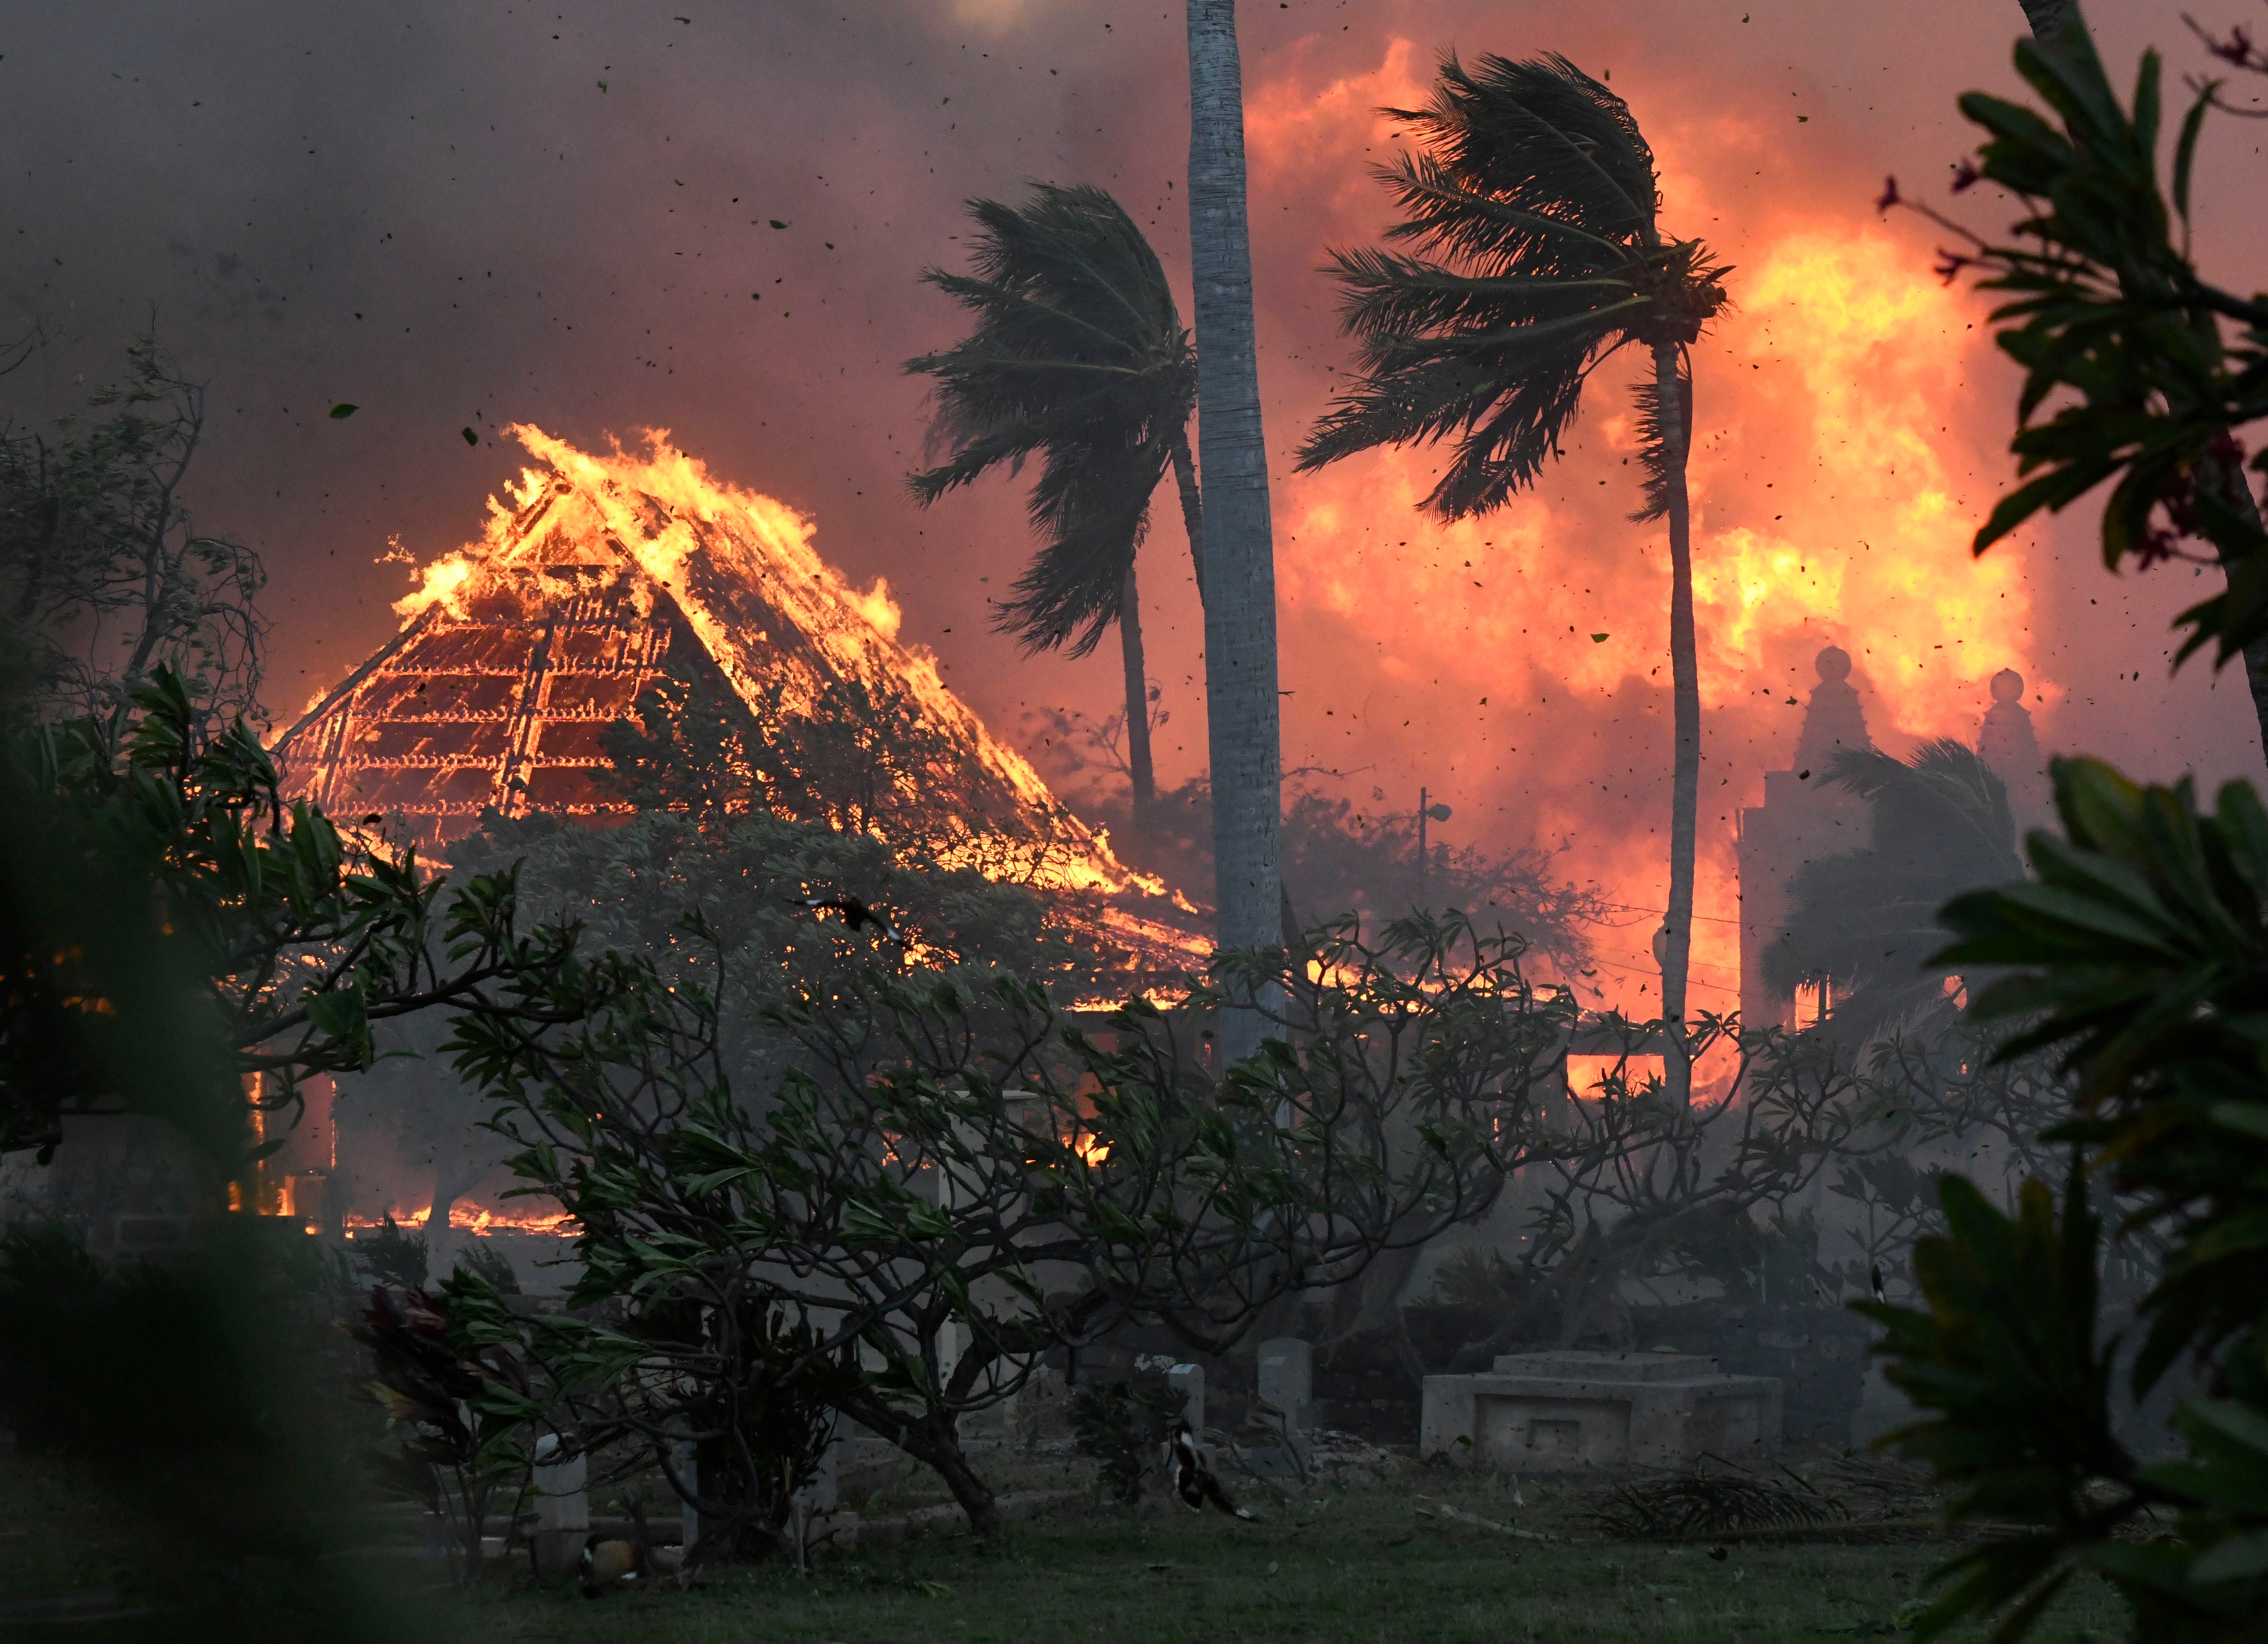 Wildfires devastating the Hawaiian island of Maui last year